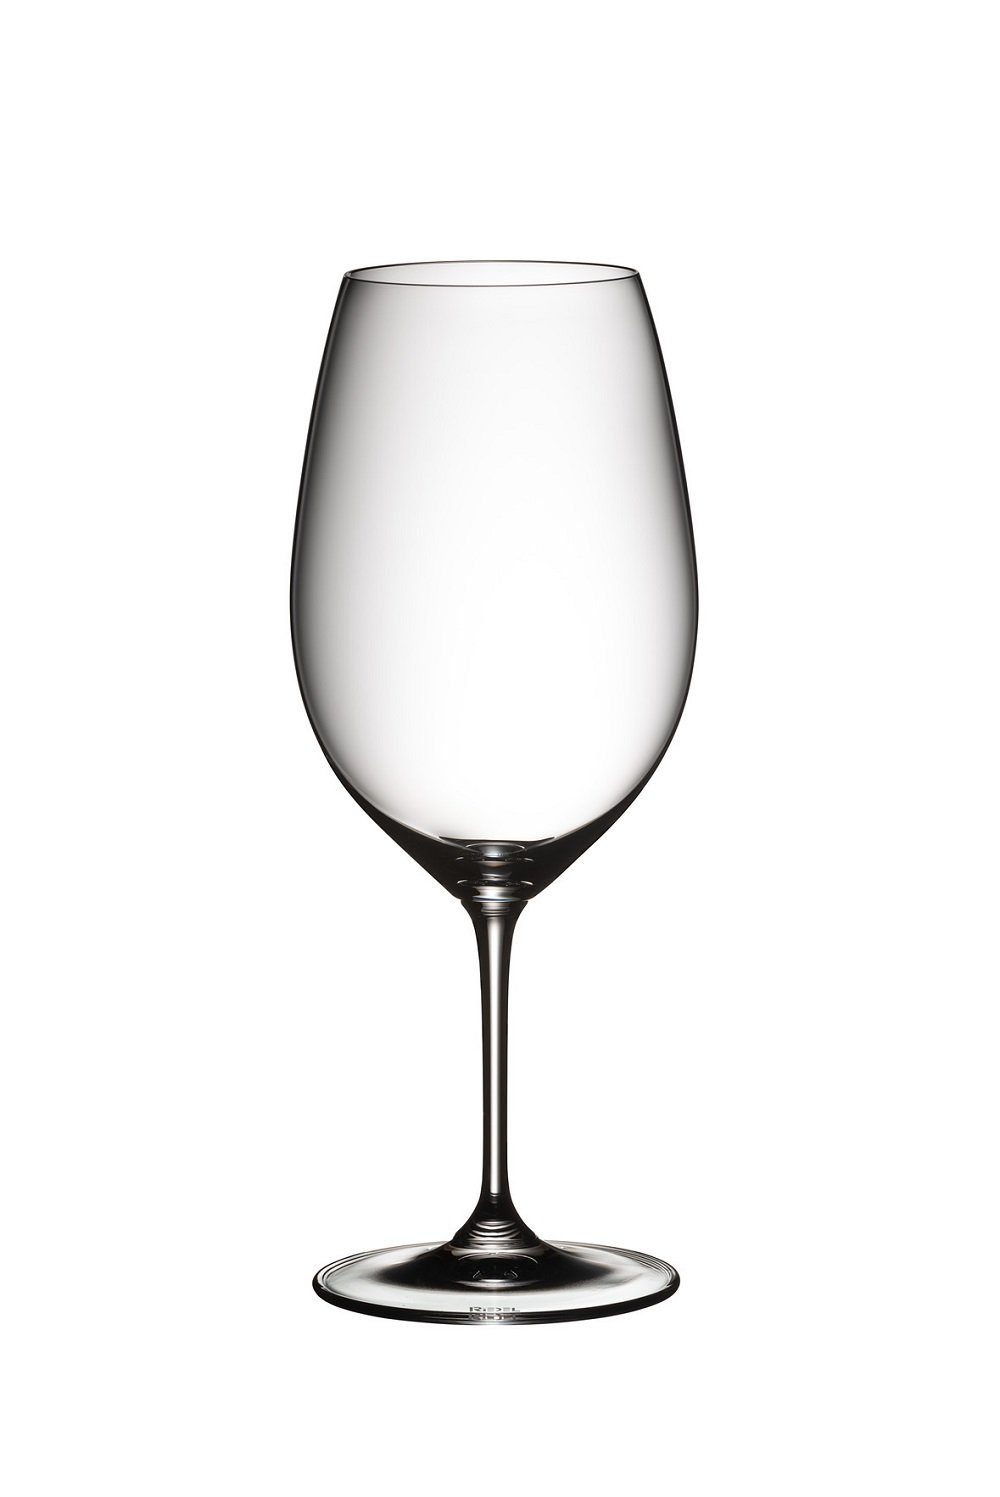 RIEDEL Glas Weinglas Riedel Vinum Syrah/ Shiraz 2er Set, Glas